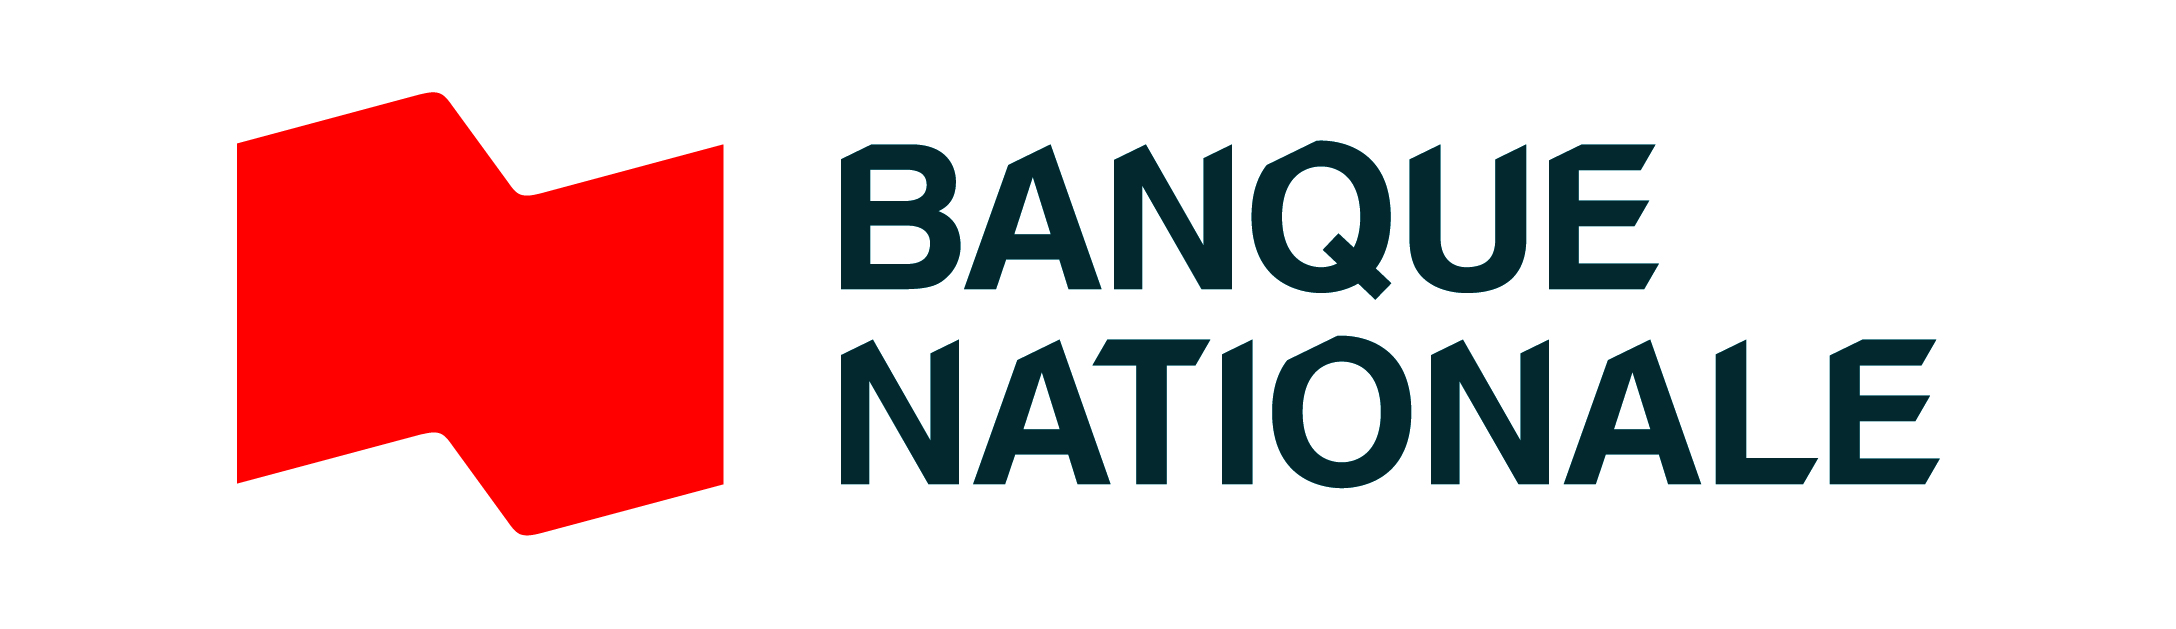 Banque Nationale - Conférence retraite